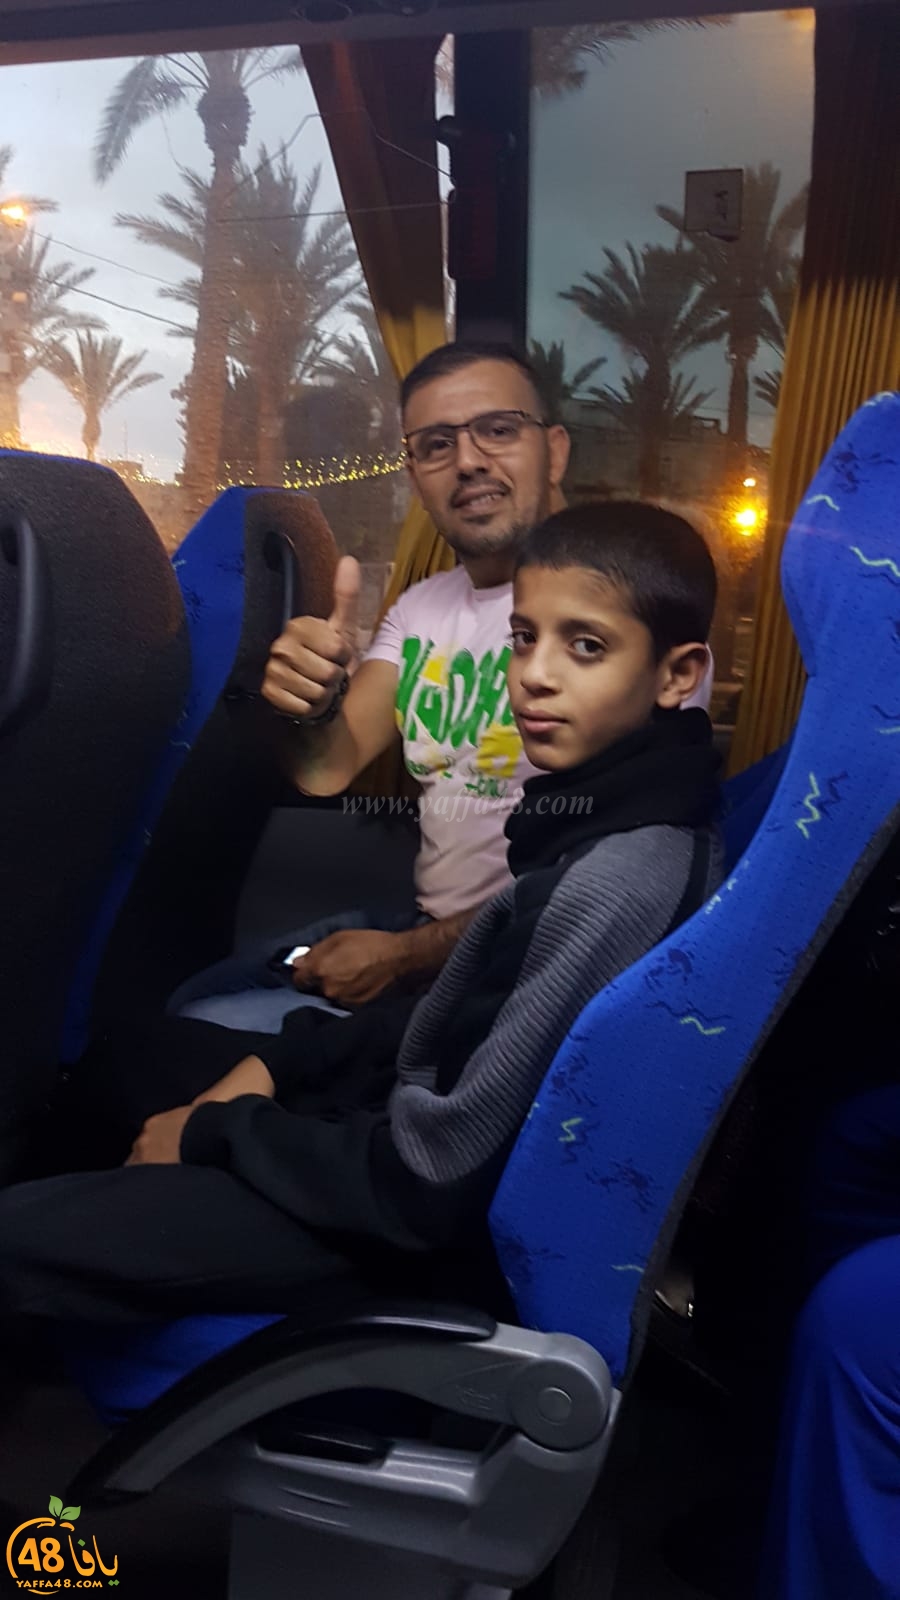  صور: 3 حافلات من مدينة يافا تشد الرحال الى المسجد الأقصى المبارك لأداء صلاة الفجر